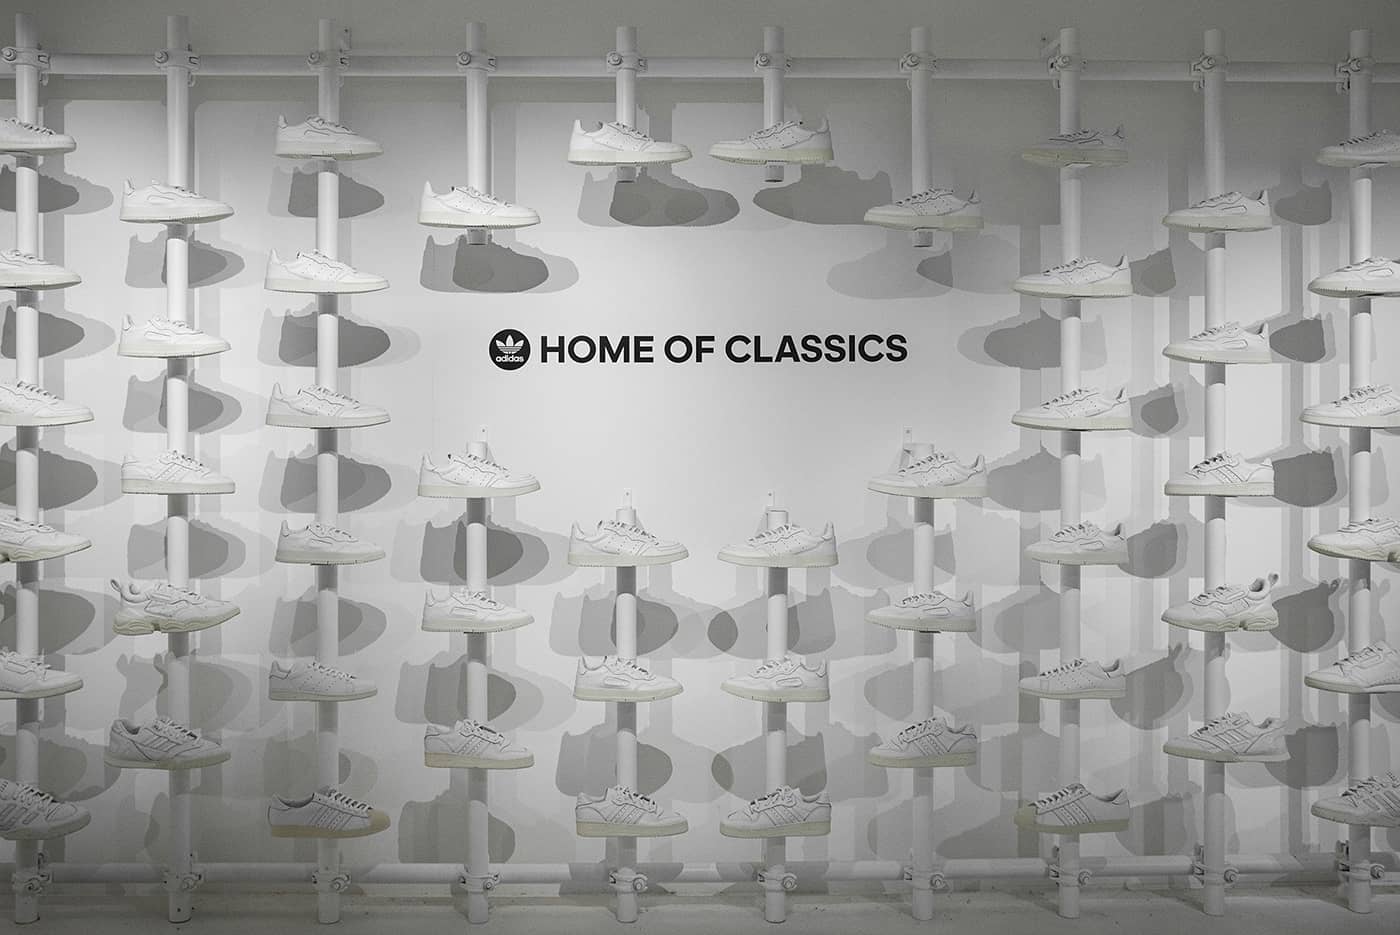 Home of Classics 파리 이벤트(adidas Originals Home of Classics Paris Event)-1